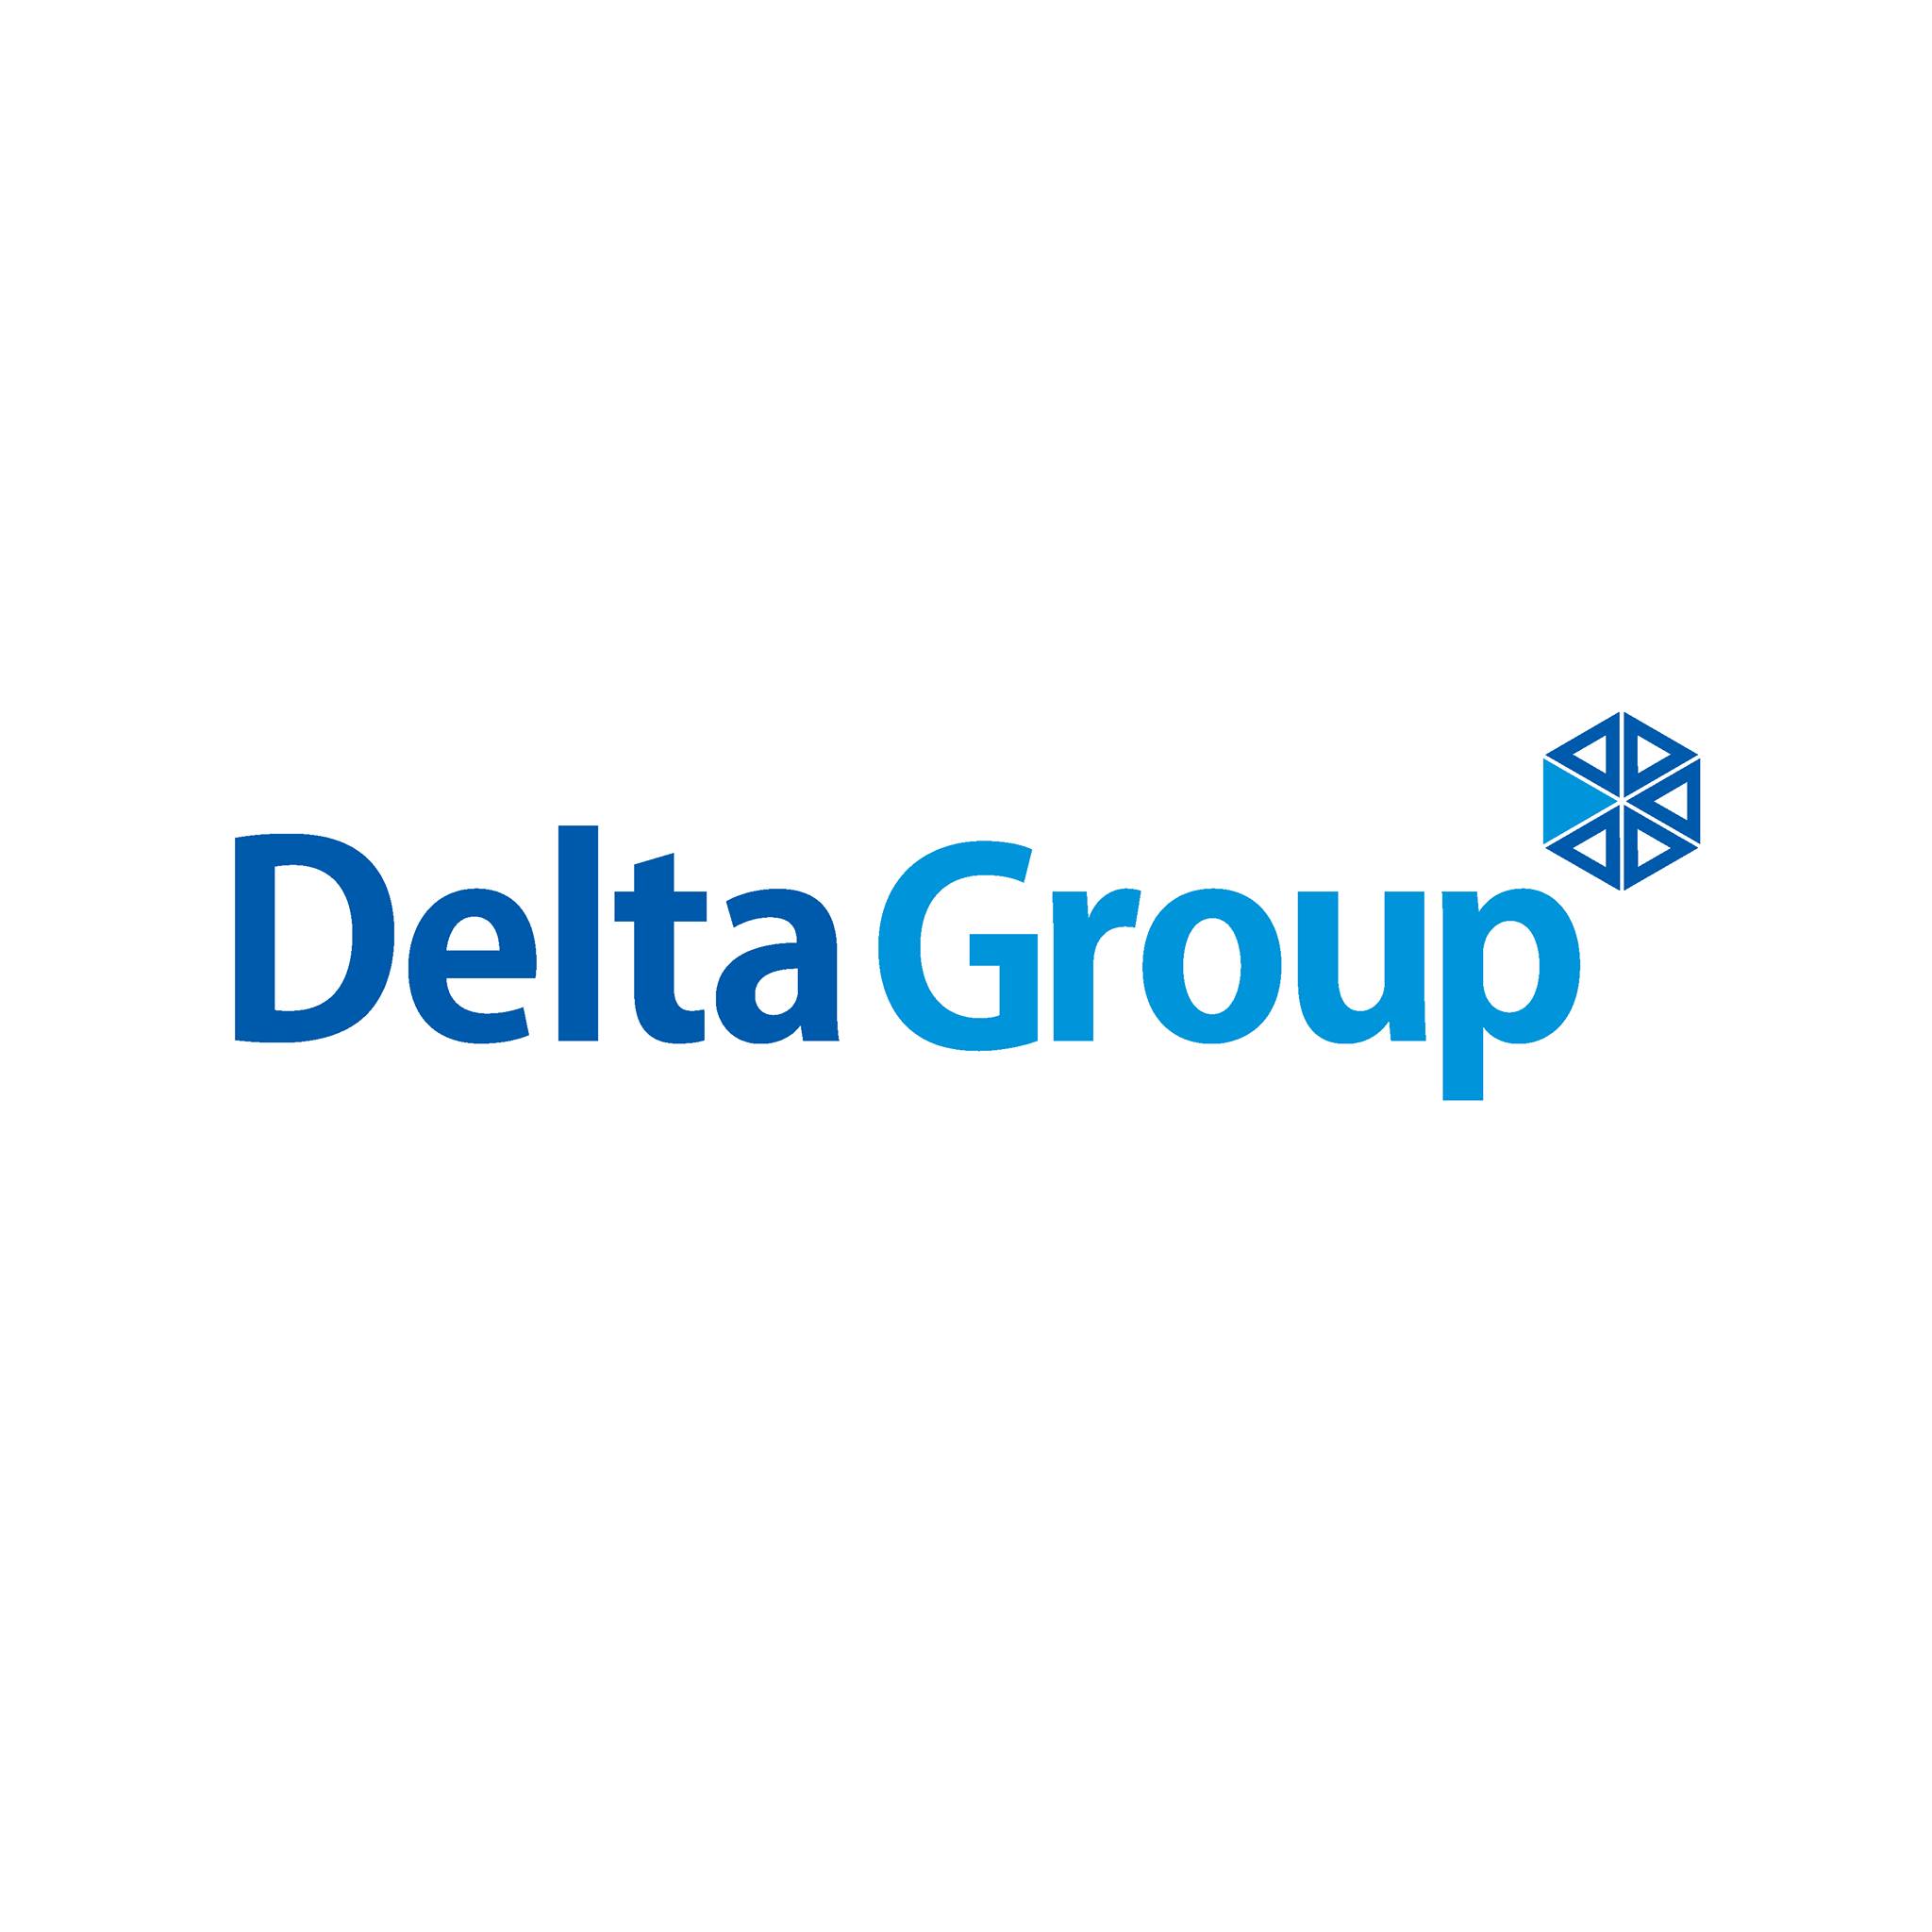 Delta group company